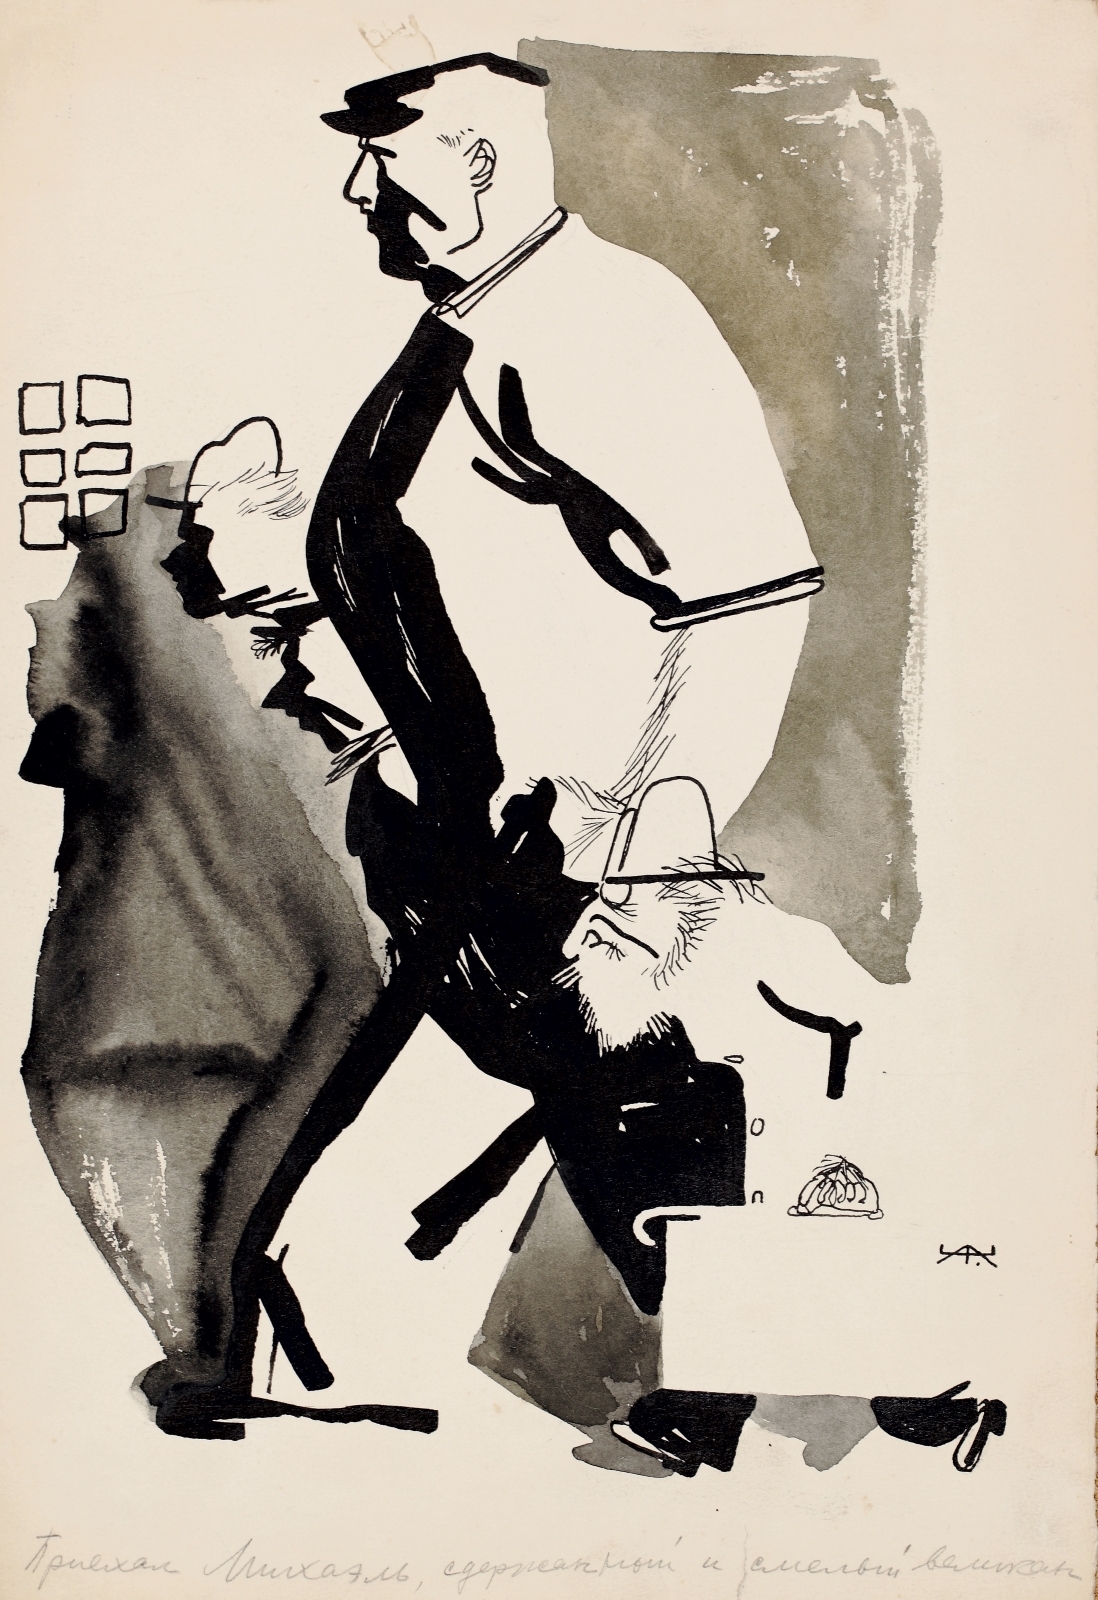 Приехал Михаэль, сдержанный и смелый великан. Эскиз иллюстрации к журналу «РОСТ» №15. Первая половина 1930-х